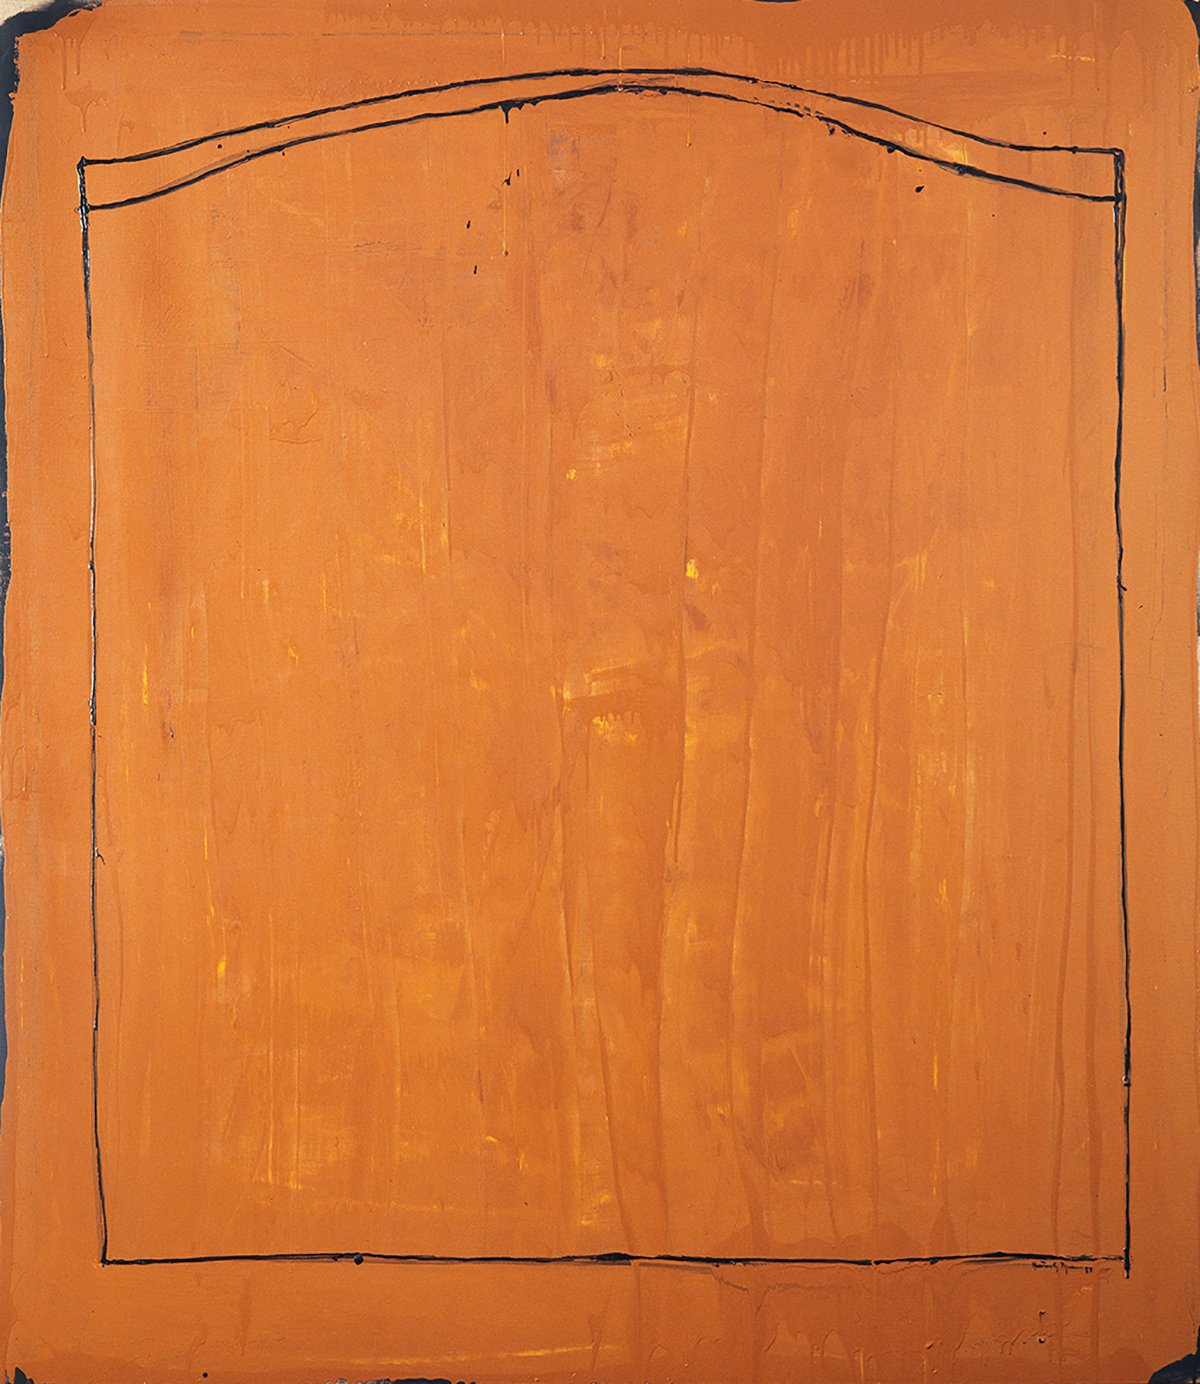   “El camp des de la finestra” , 1987 Oli sobre tela (192 x 168 cm.)  